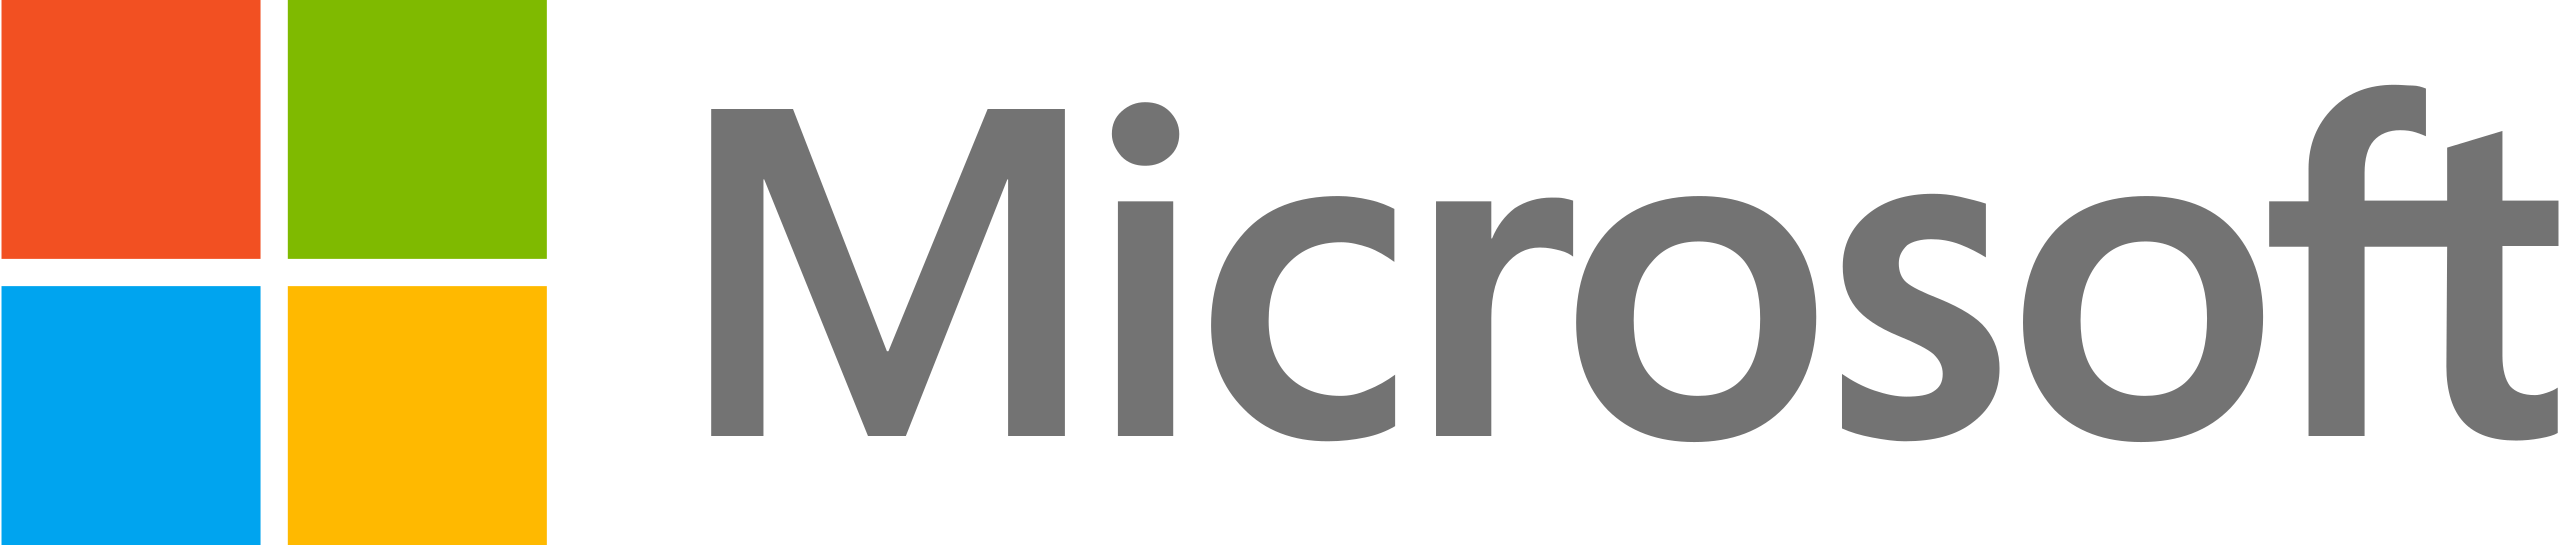 Microsoft vendor logo